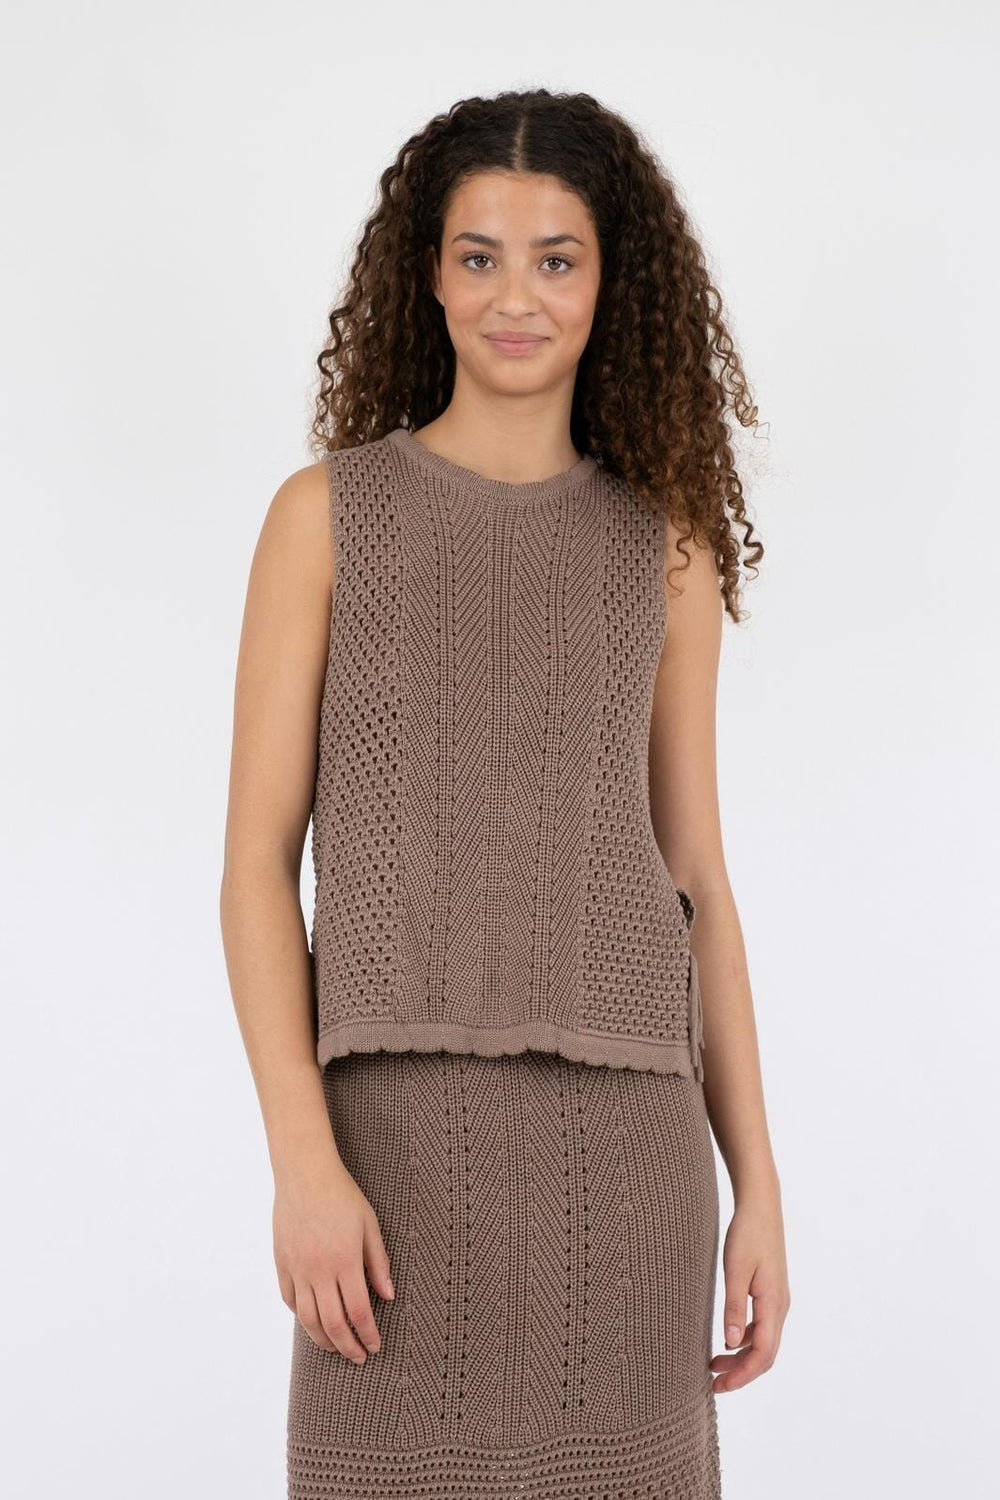 Neo Noir - Aritza Crochet Knit Top - Dusty Brown